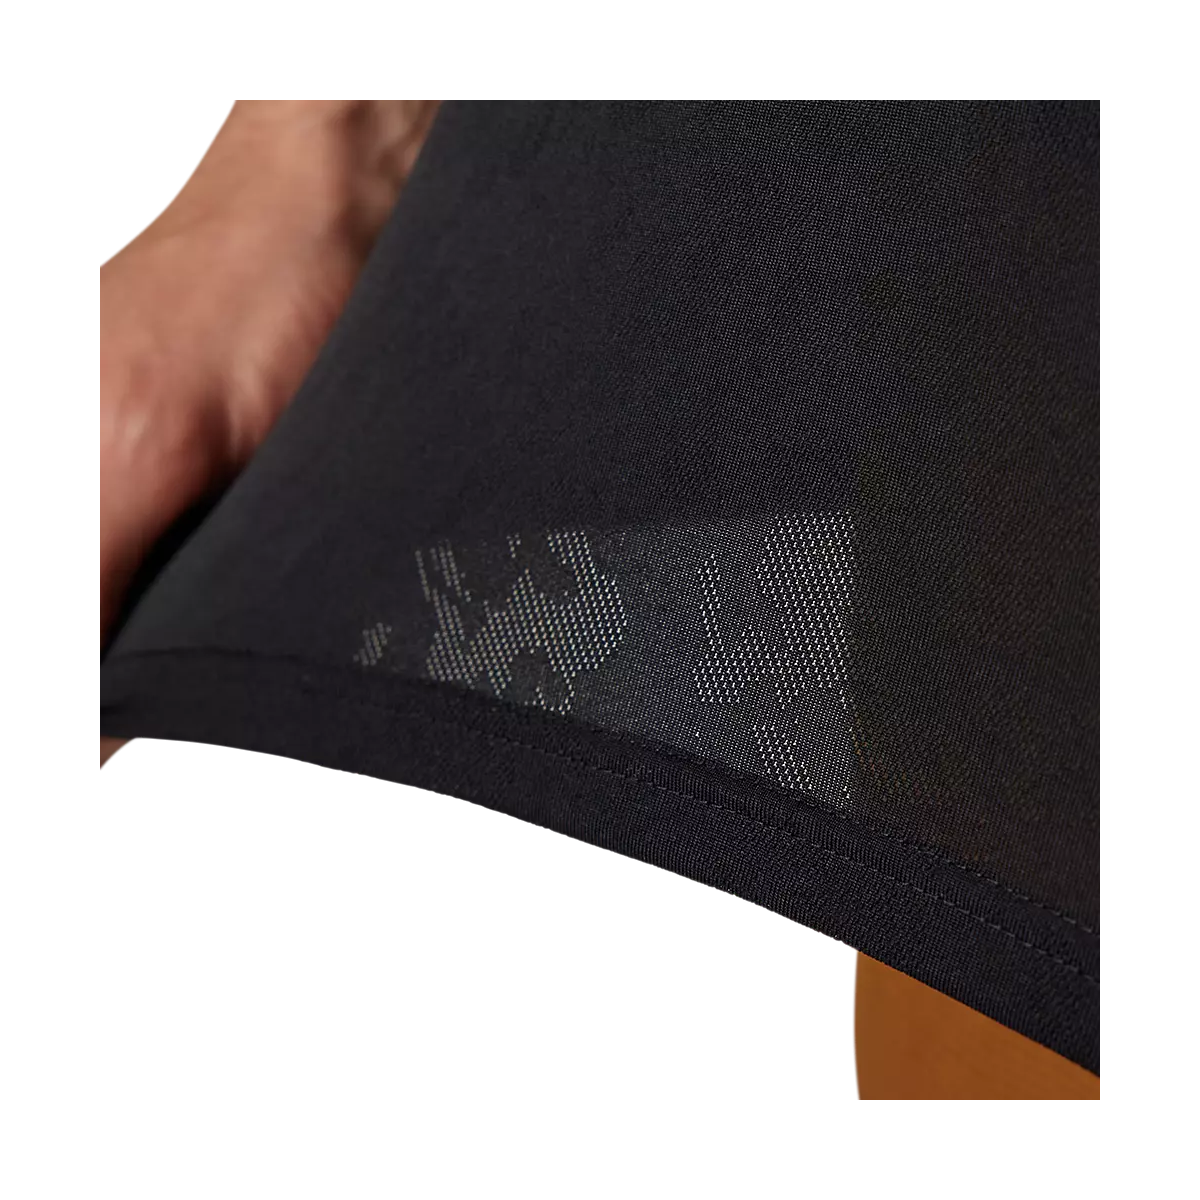 tejido transpirable de Camiseta técnica de manga corta Fox Ranger Trudri en color negro con el nuevo logo fox en gris 30909-001